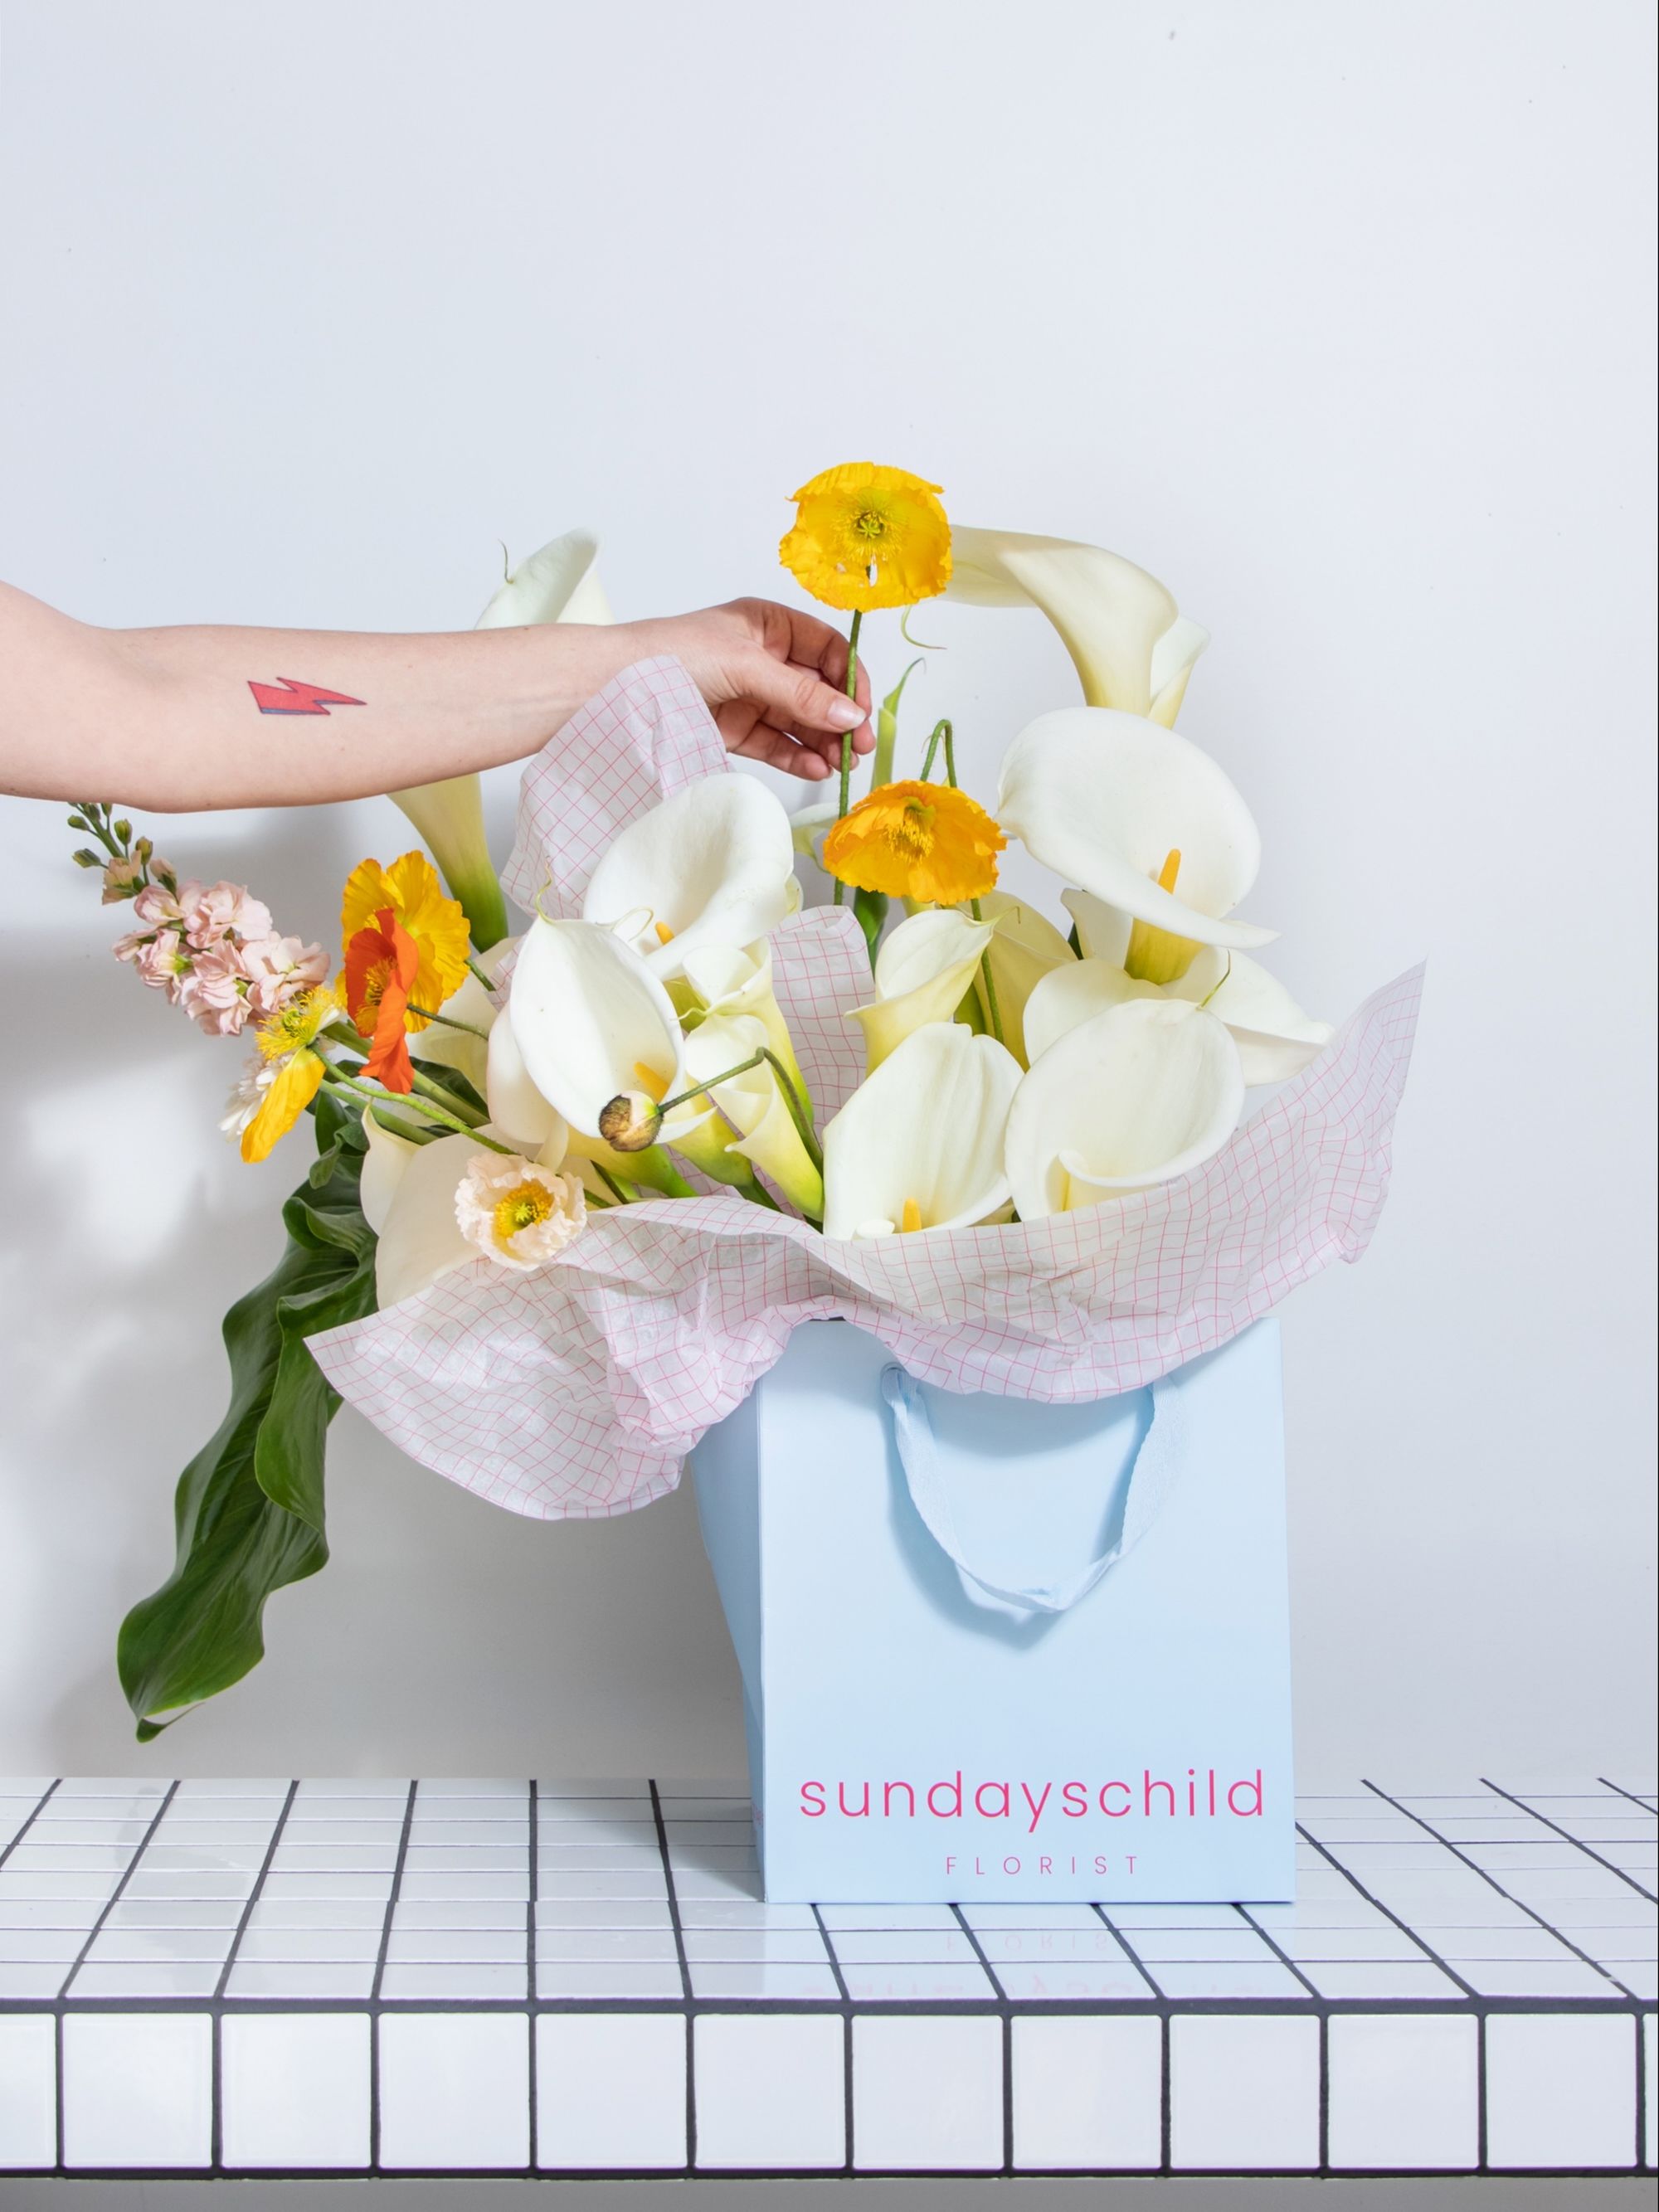 Sundays Child Florist: Bouquets that Exude Love for Nature's Beauty